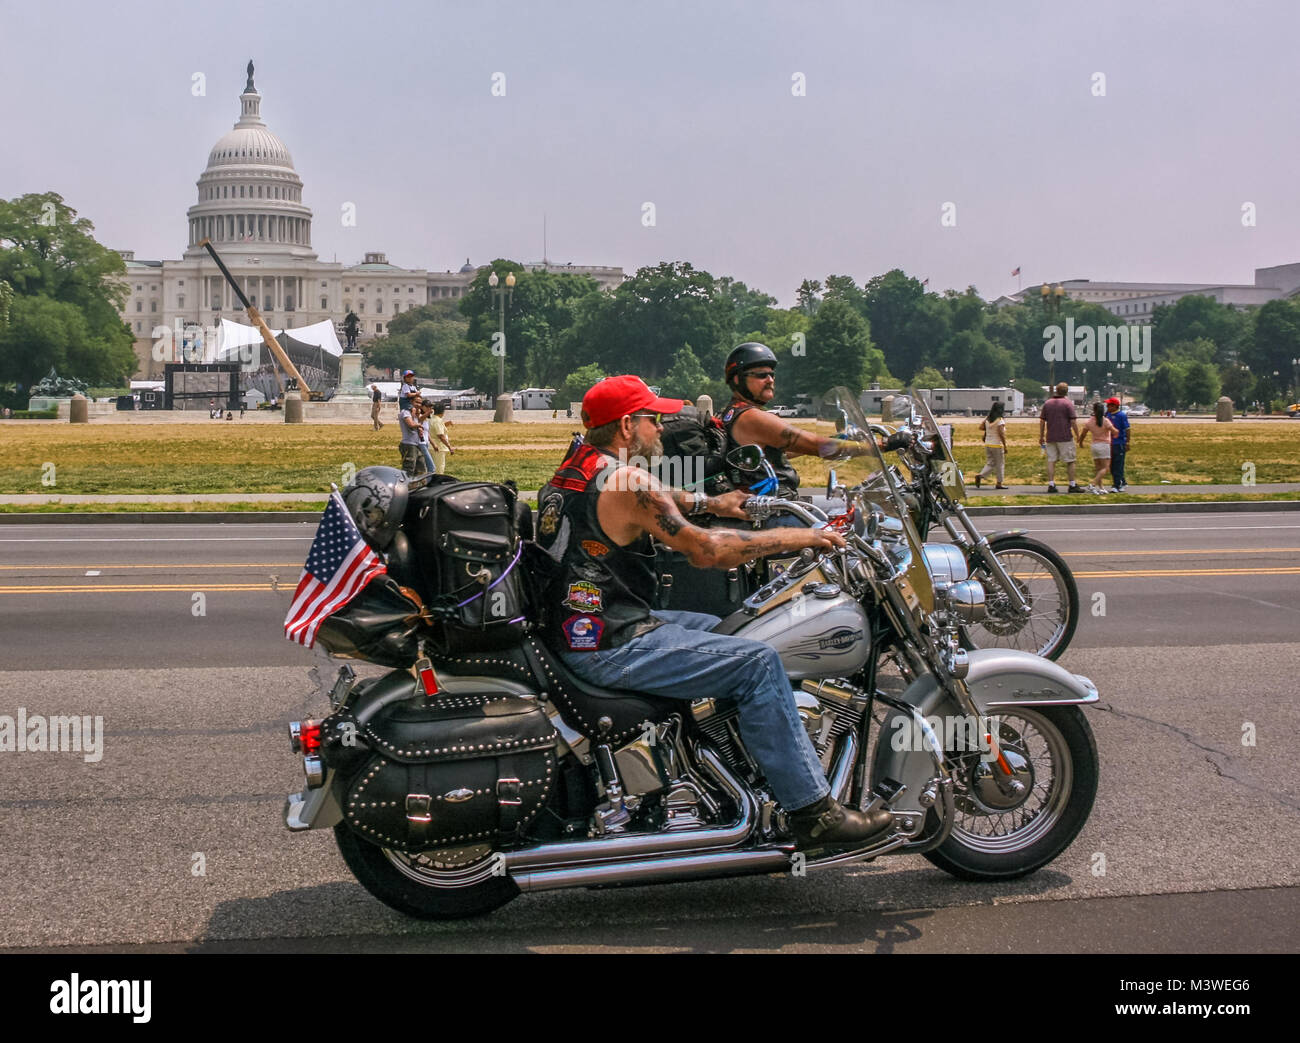 Avis de plusieurs motocyclistes mature équitation au Rolling Thunder rassemblement annuel à Washington, D.C., United States Capitol Building en arrière-plan Banque D'Images